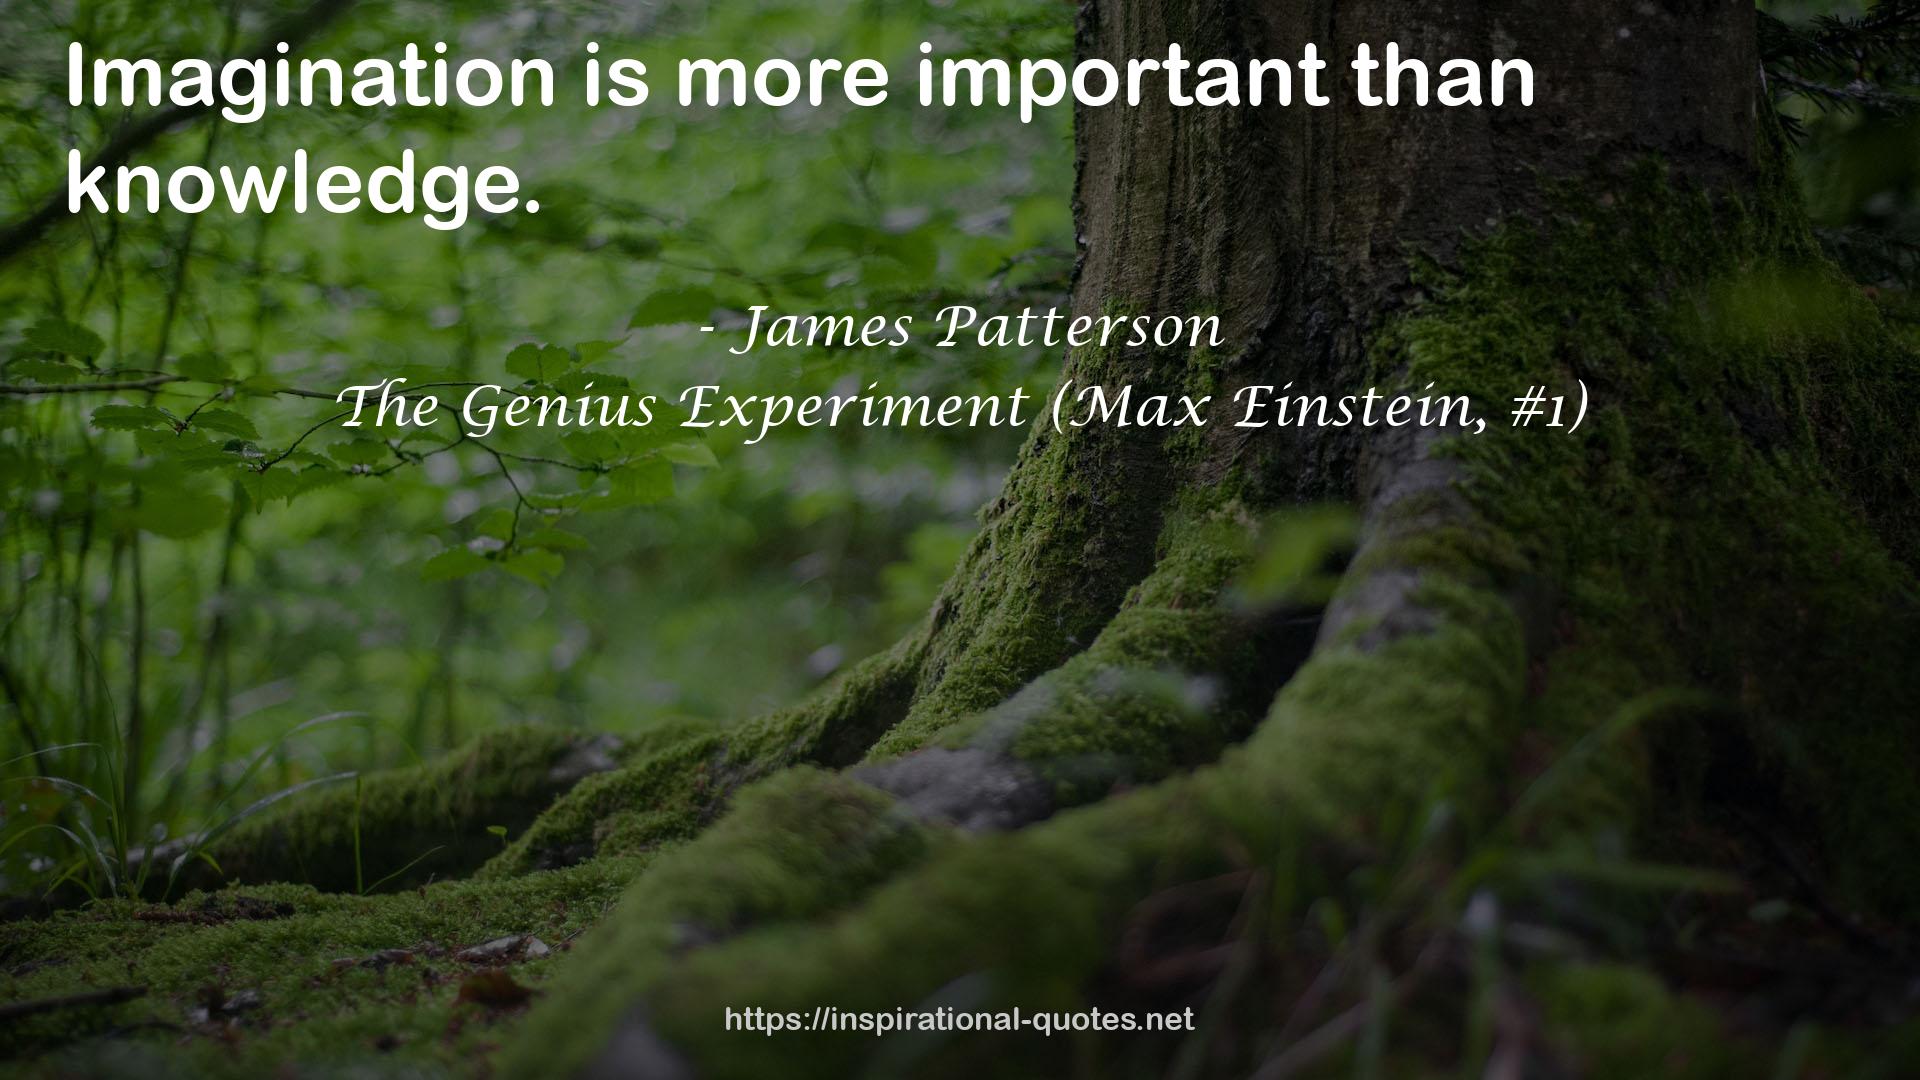 The Genius Experiment (Max Einstein, #1) QUOTES